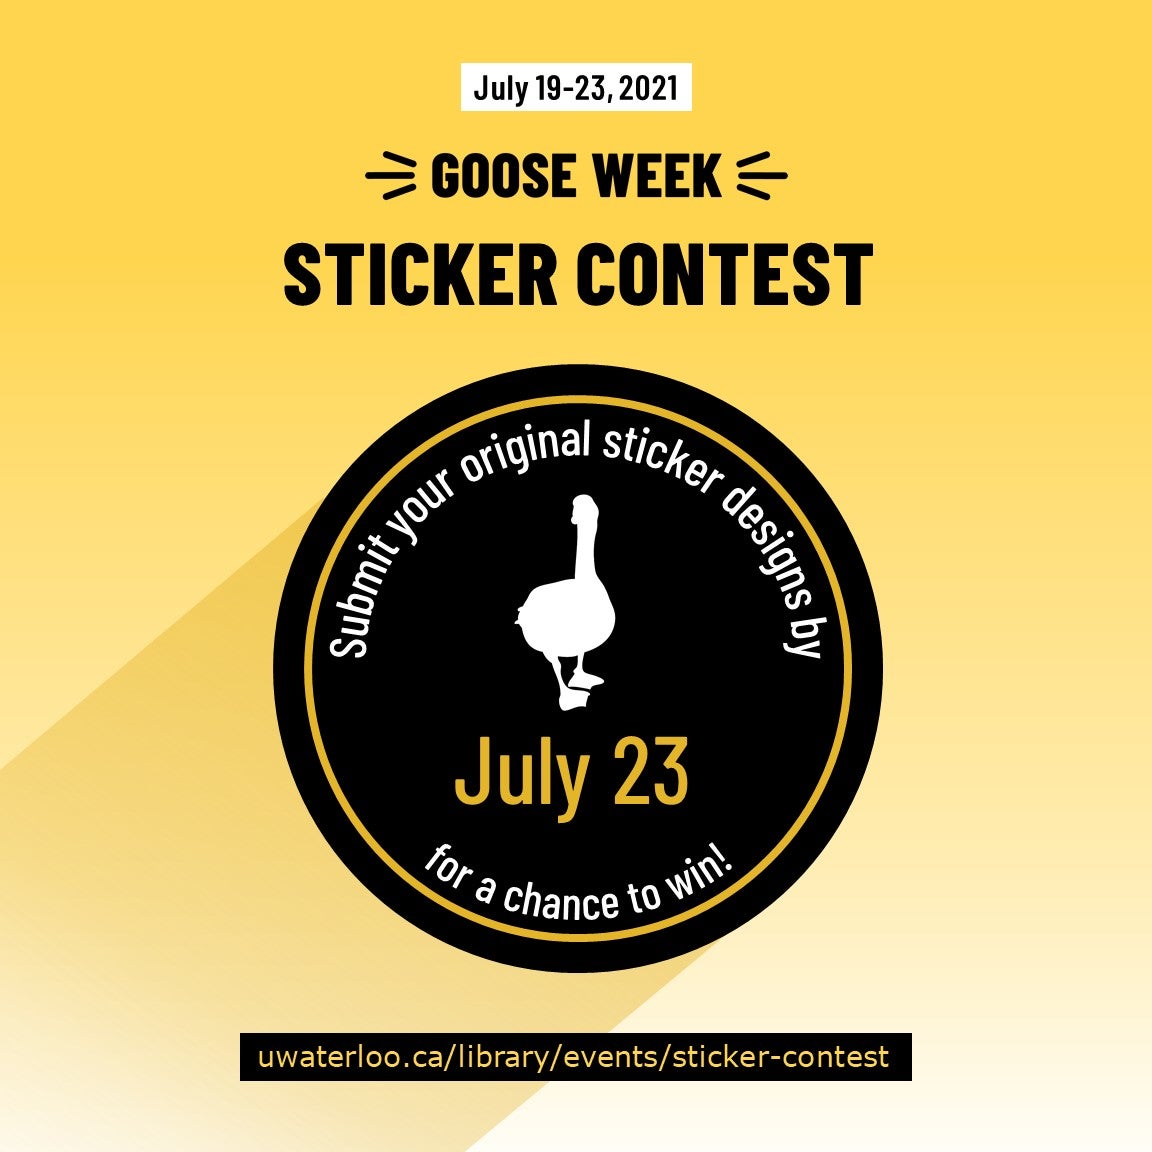 Goose Week 2021 sticker contest